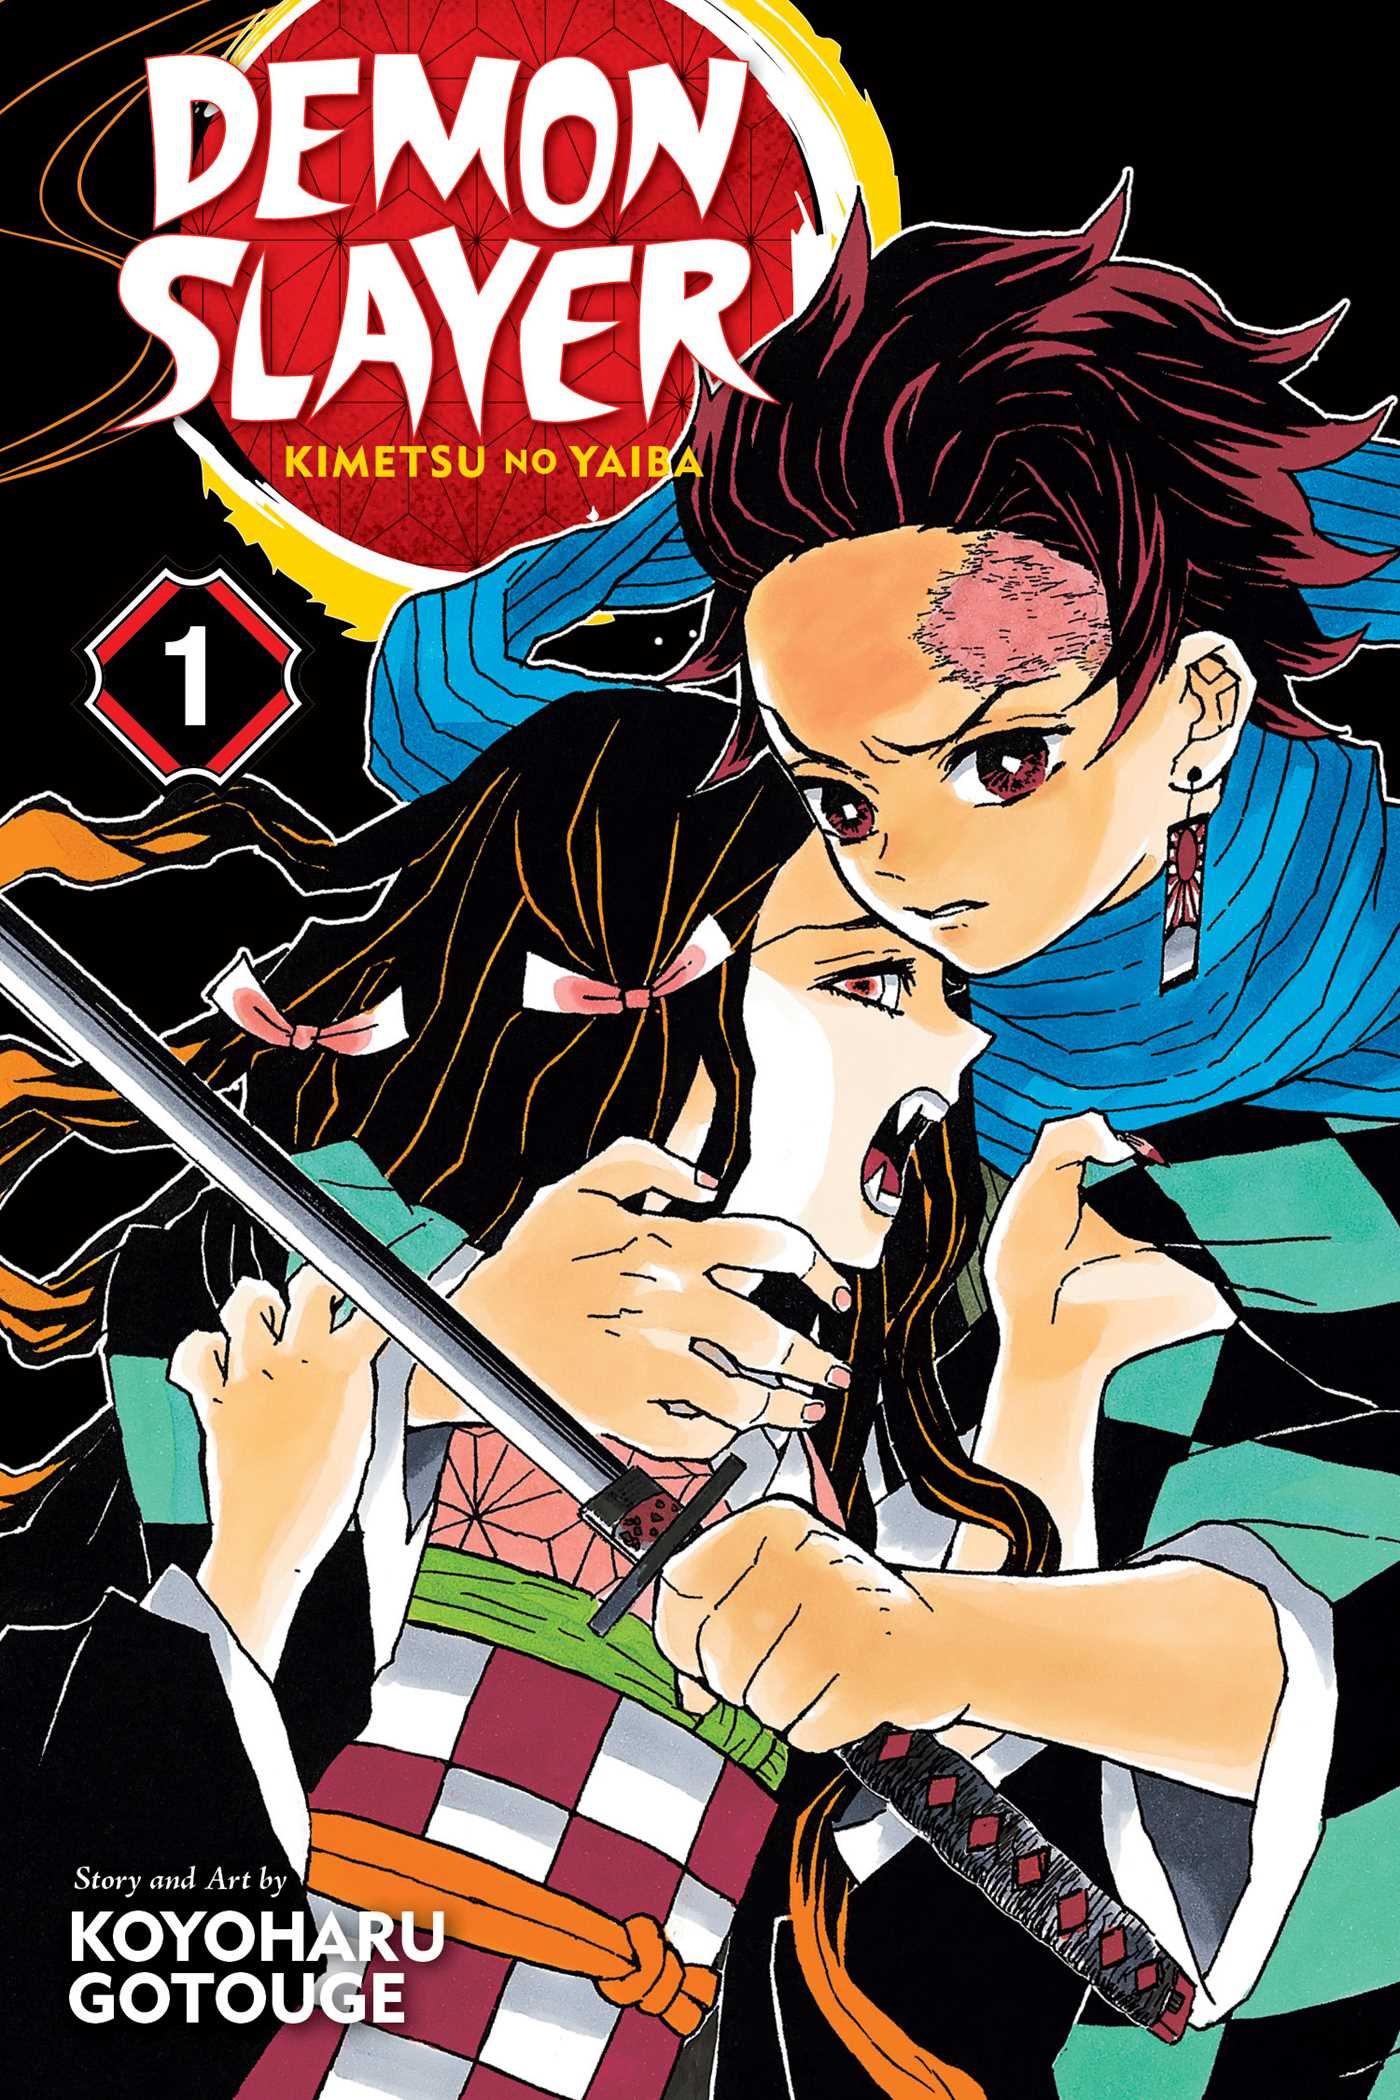 Vezi detalii pentru Demon Slayer: Kimetsu no Yaiba - Volume 1 | Koyoharu Gotouge